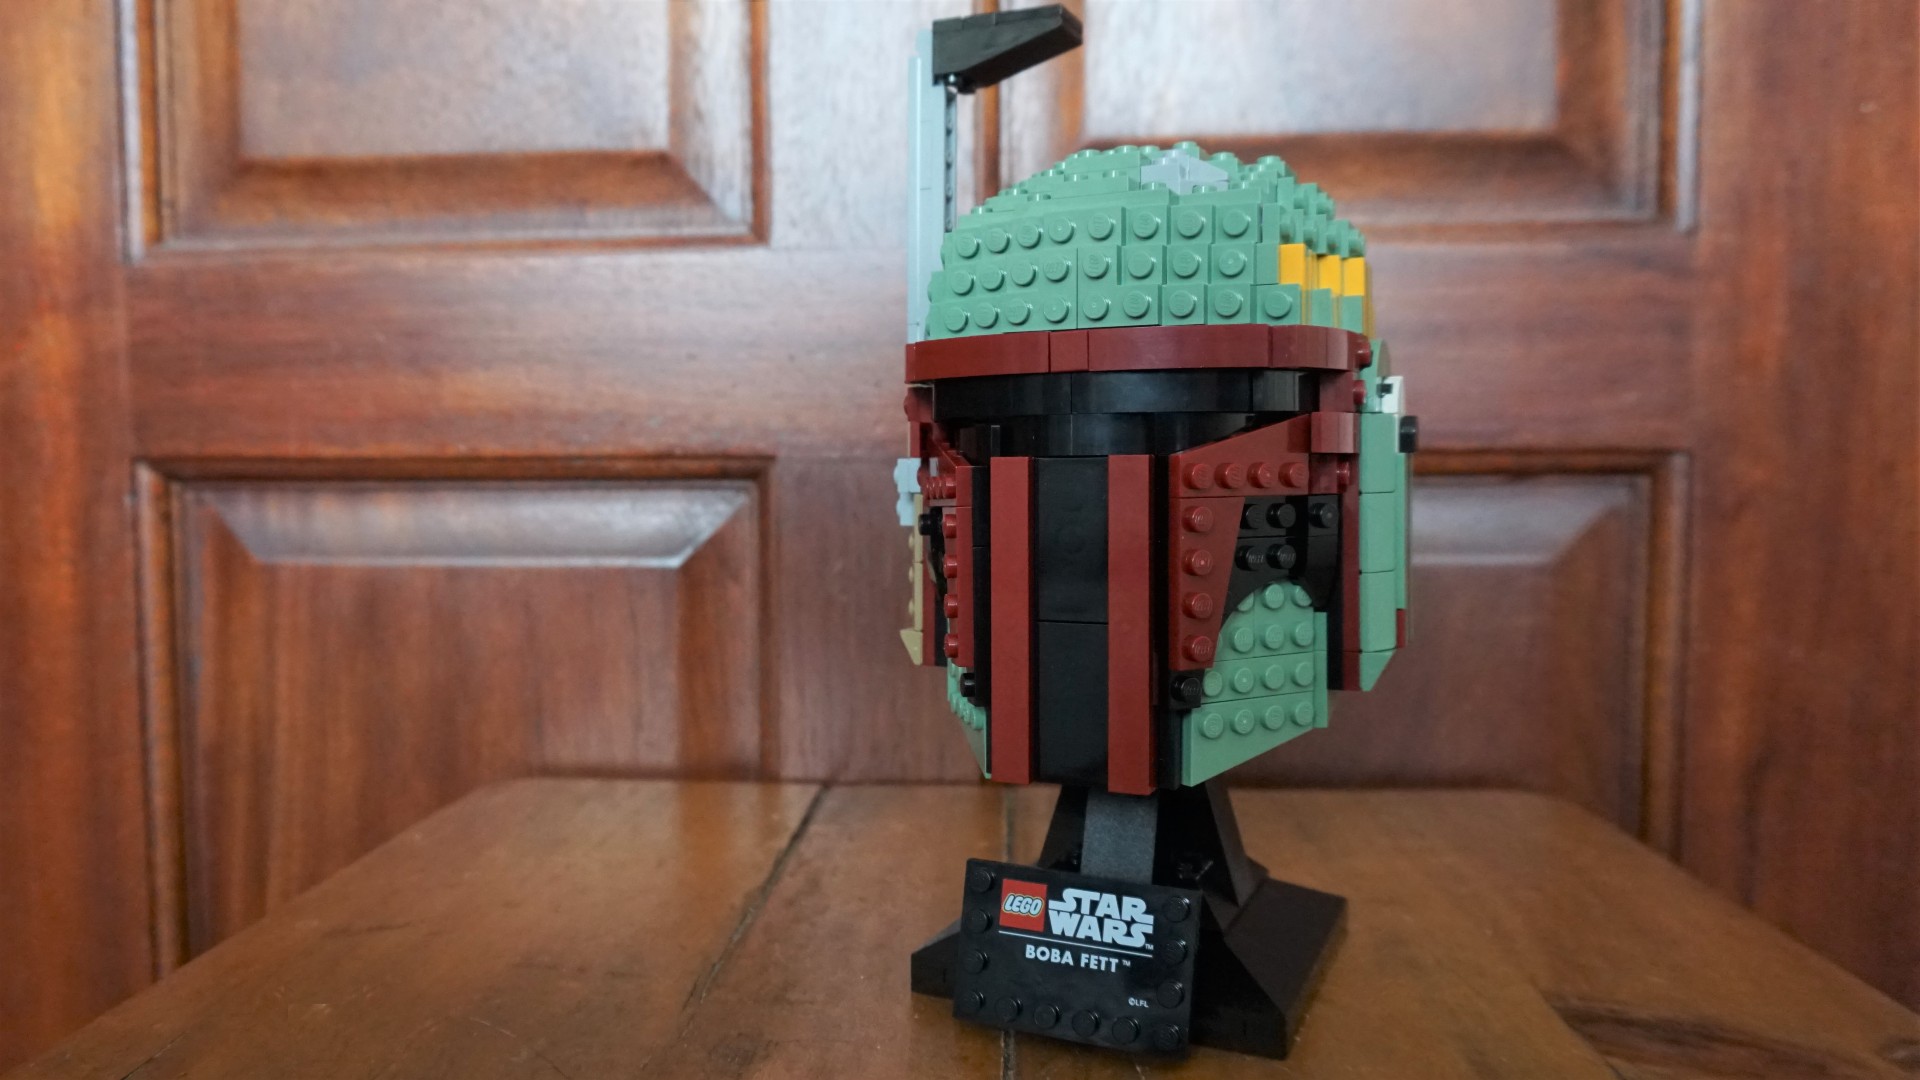 Lego Star Wars Boba Fett_Front slight angle view_Kimberley Snaith